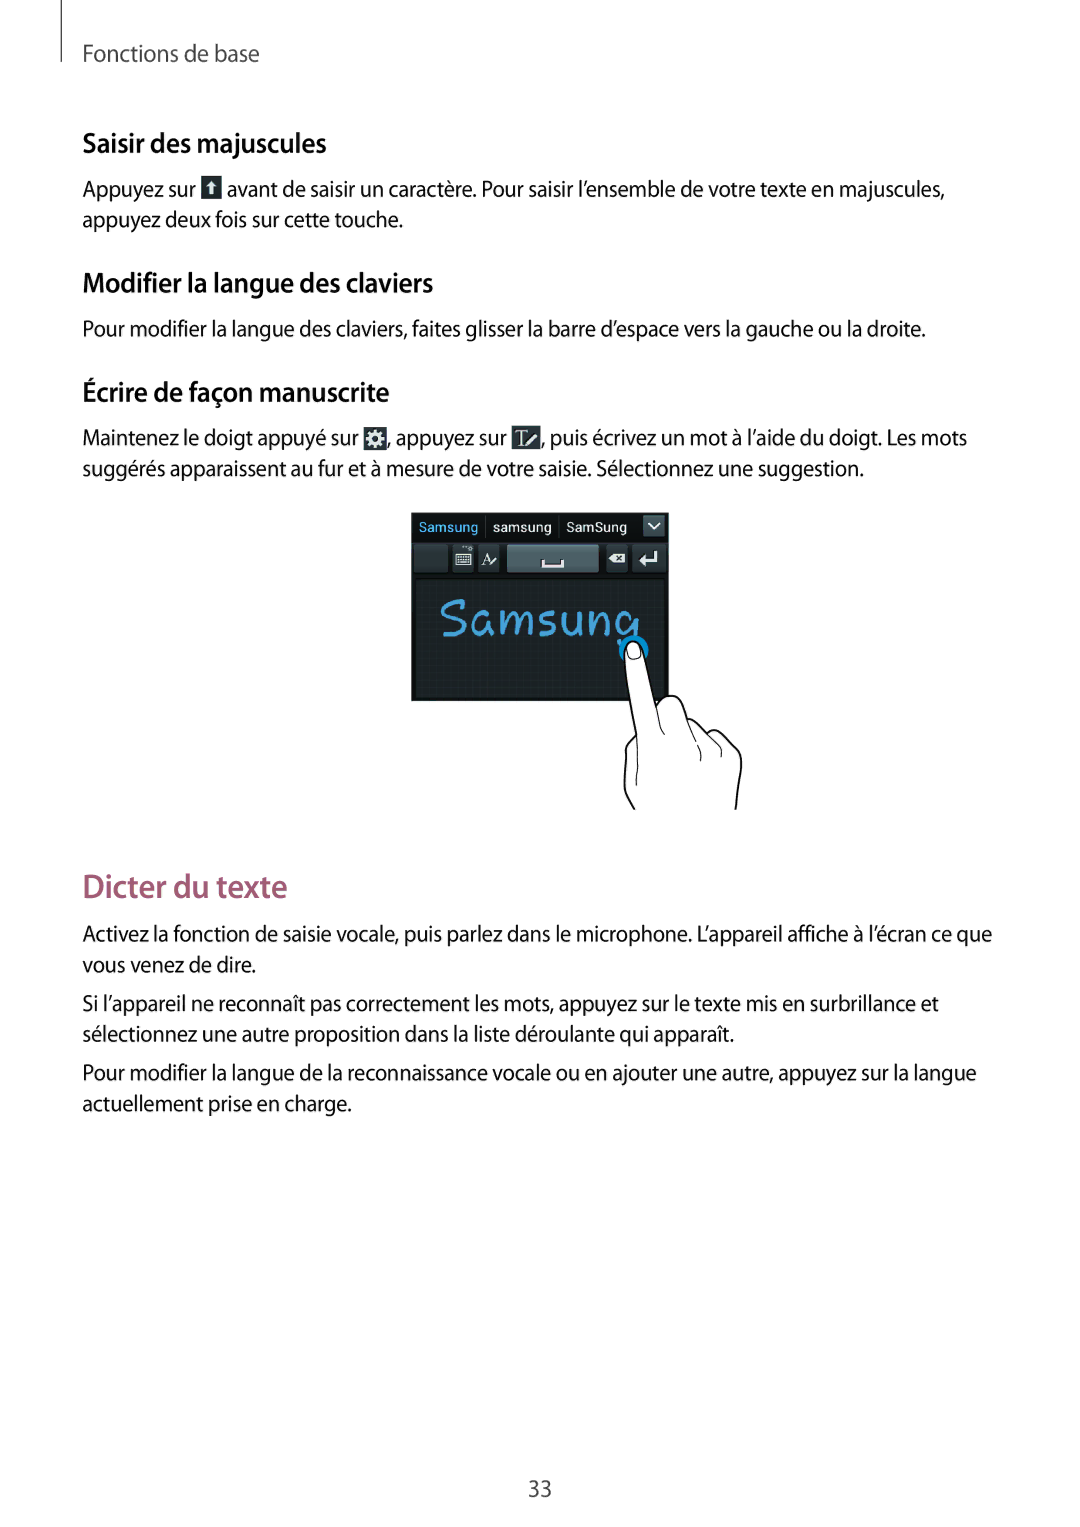 Samsung GT-S7710TAABGL Dicter du texte, Saisir des majuscules, Modifier la langue des claviers, Écrire de façon manuscrite 